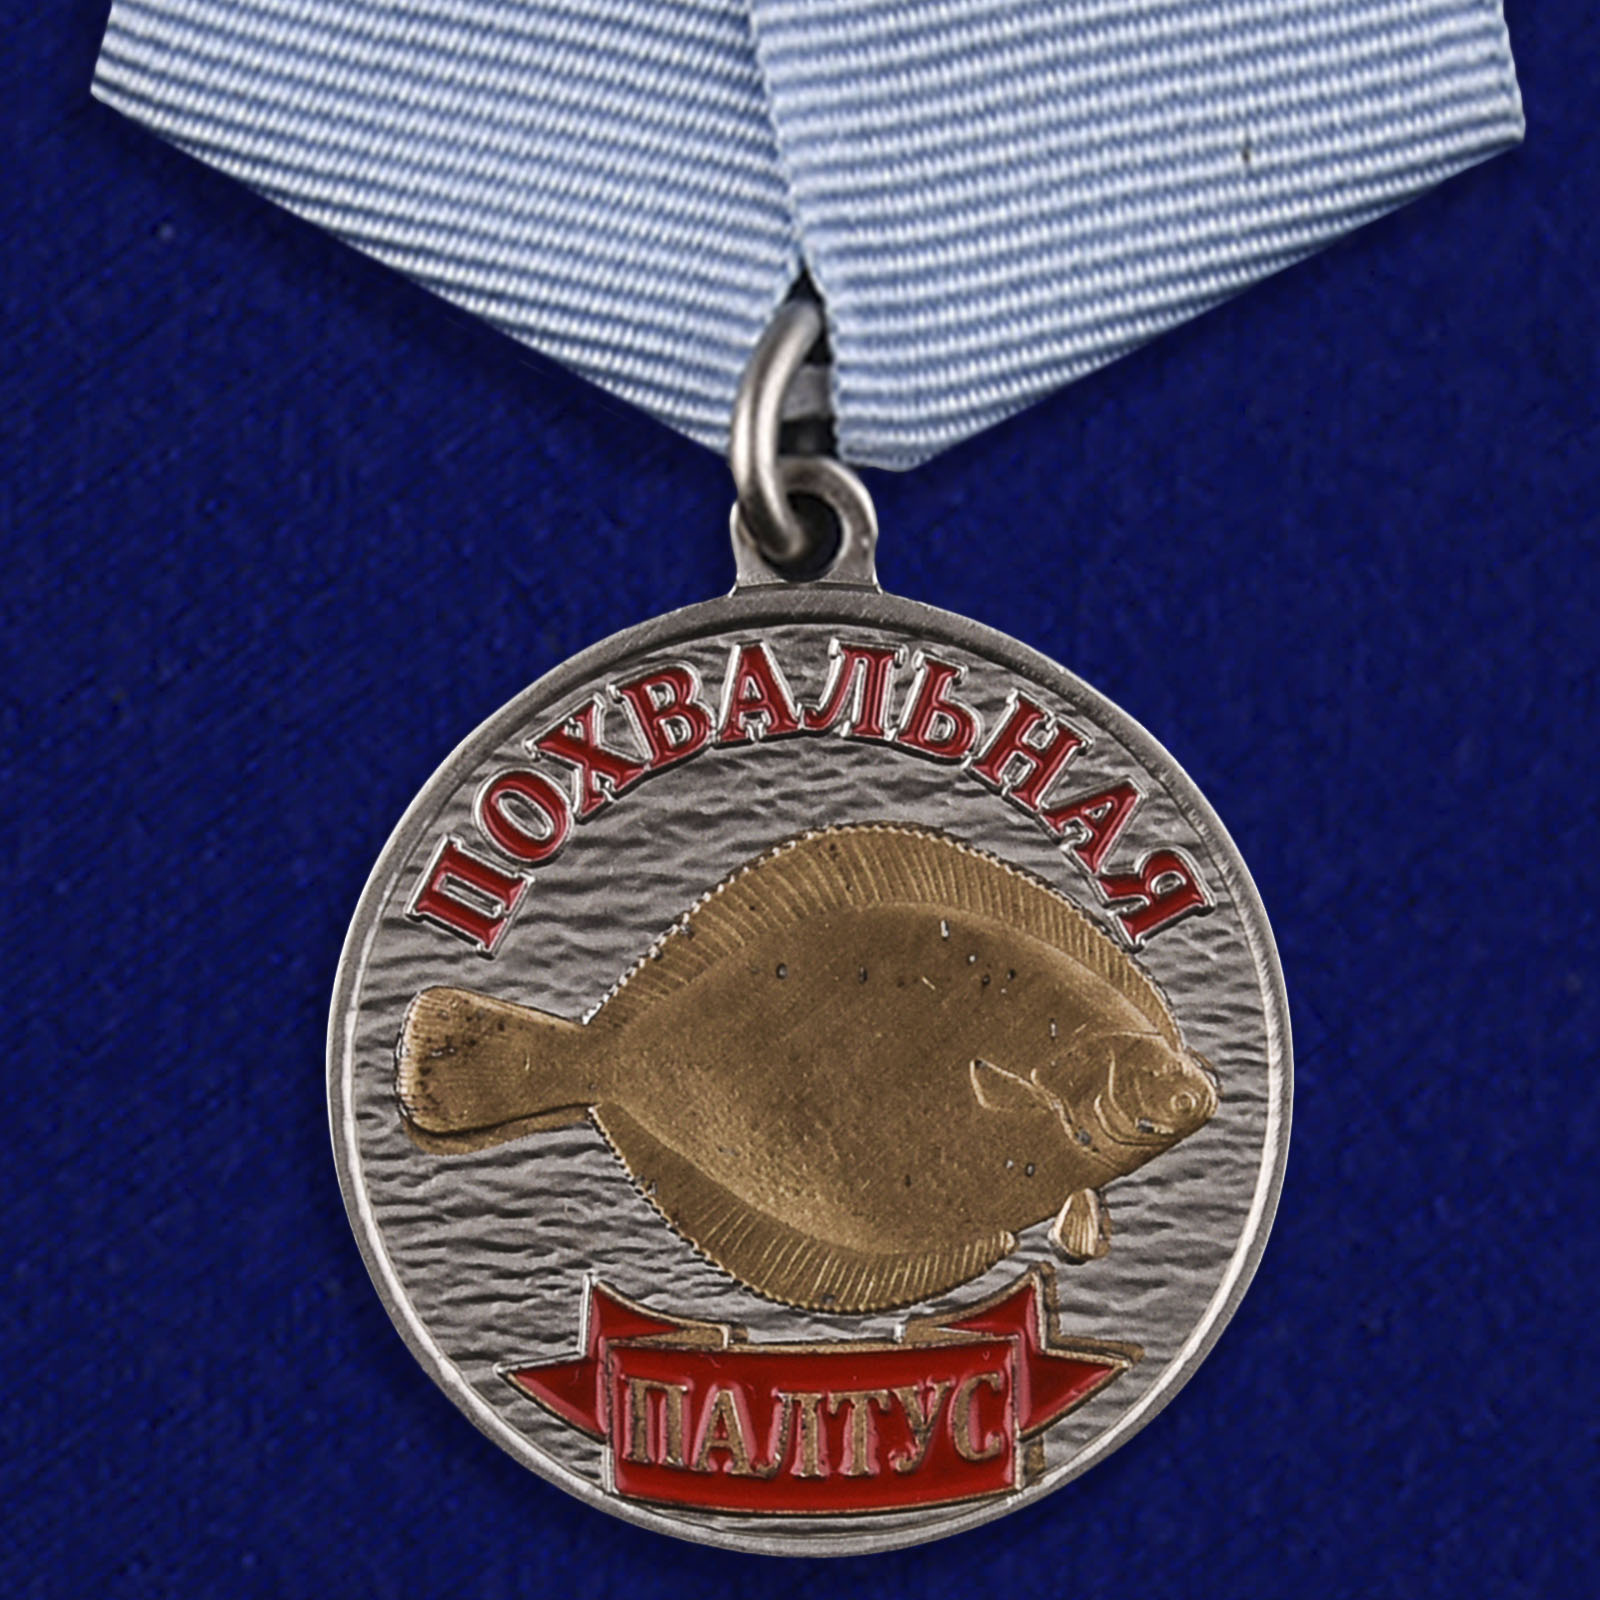 Купить медаль с рыбой Палтус на подставке онлайн выгодно